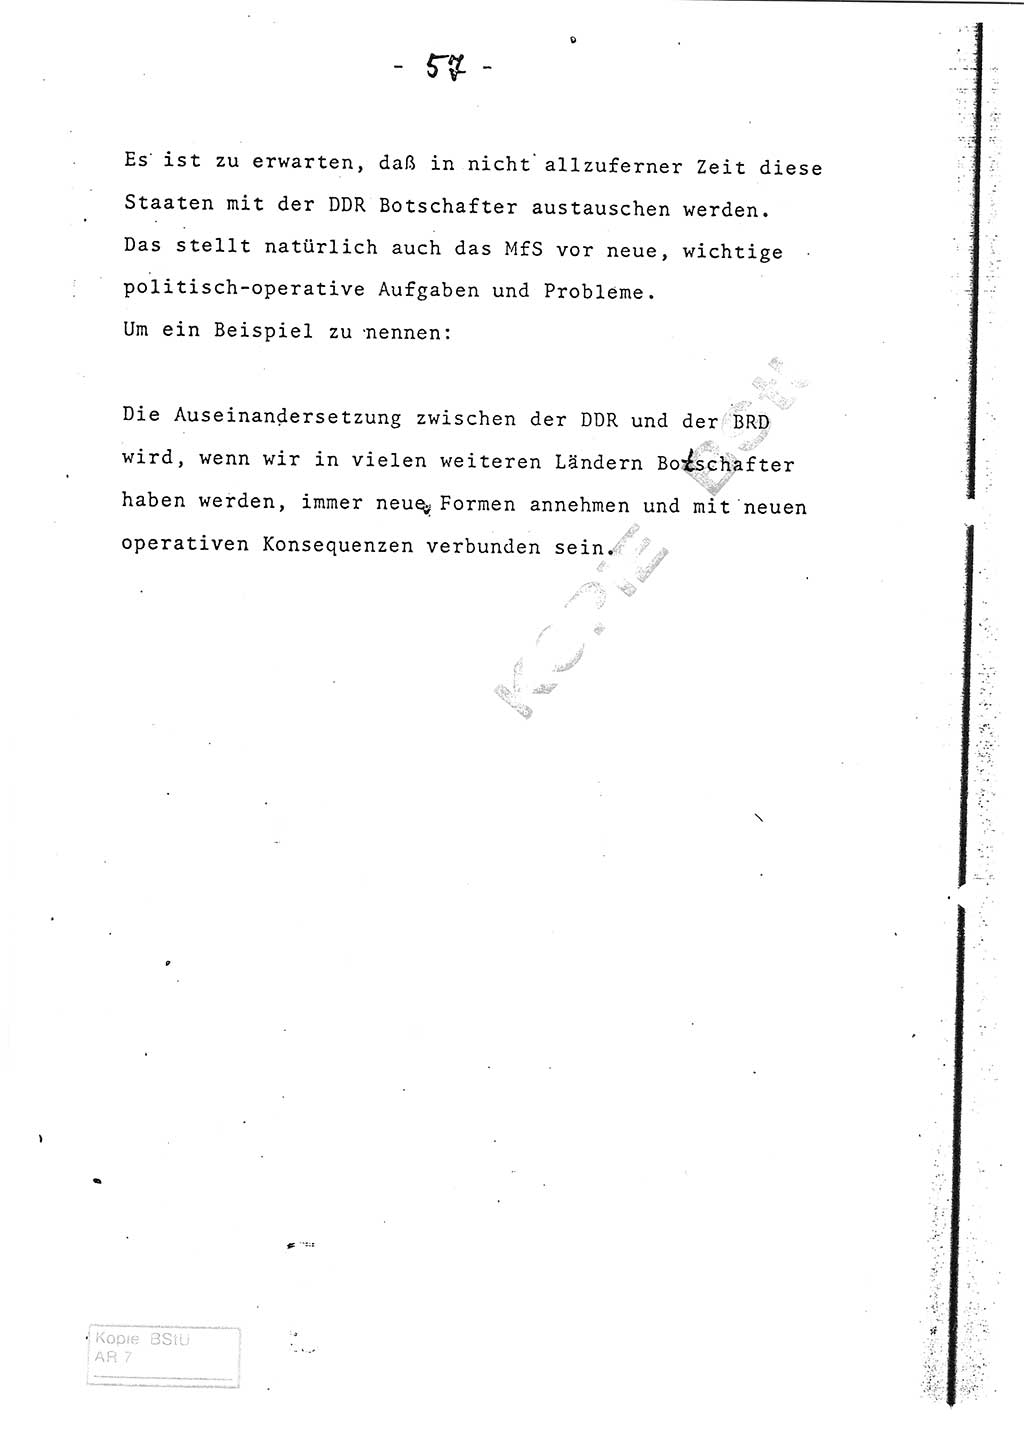 Referat (Entwurf) des Genossen Minister (Generaloberst Erich Mielke) auf der Dienstkonferenz 1972, Ministerium für Staatssicherheit (MfS) [Deutsche Demokratische Republik (DDR)], Der Minister, Geheime Verschlußsache (GVS) 008-150/72, Berlin 25.2.1972, Seite 57 (Ref. Entw. DK MfS DDR Min. GVS 008-150/72 1972, S. 57)